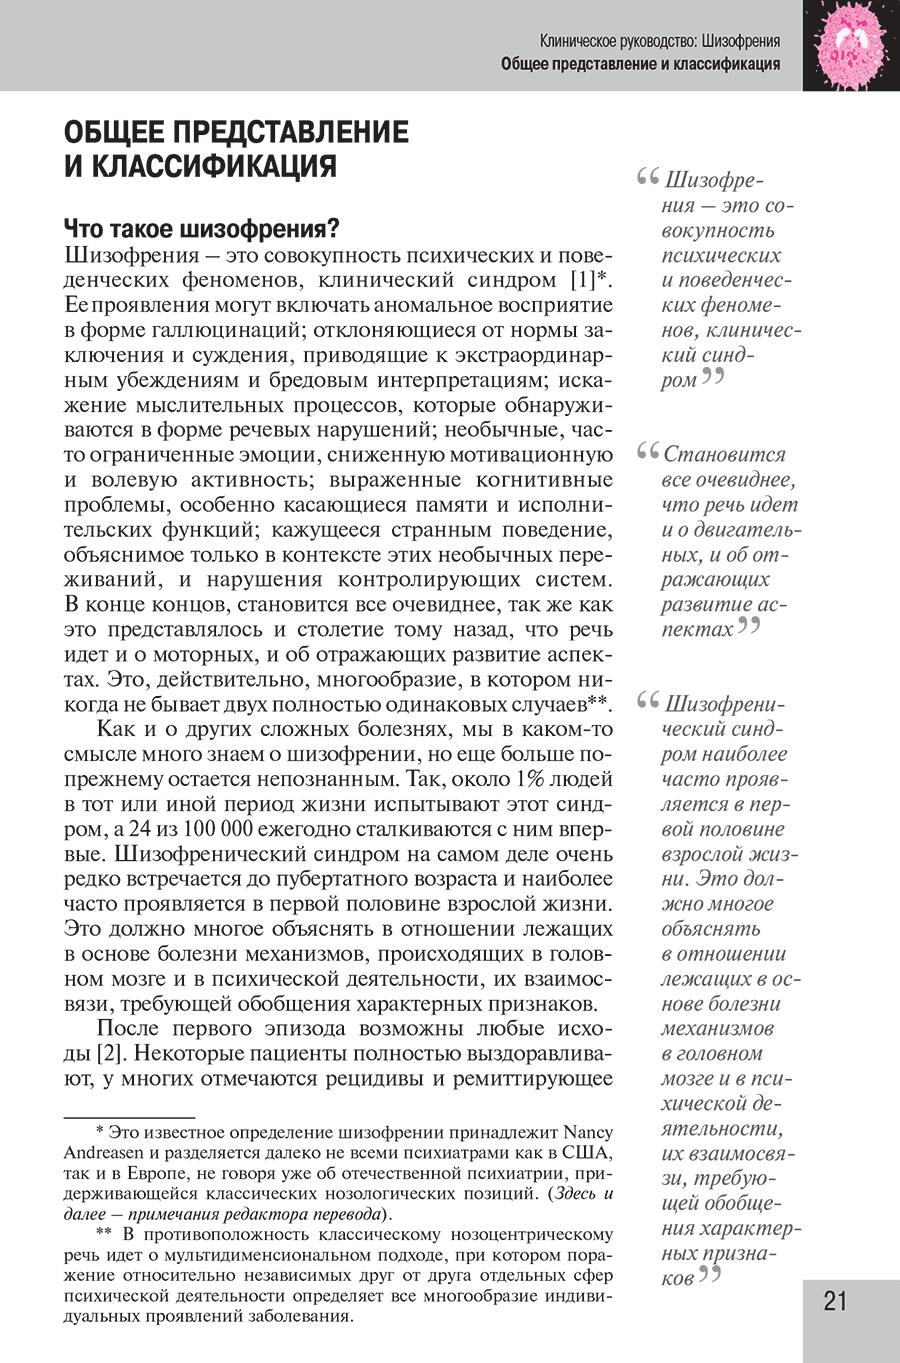 Пример страницы из книги  "Шизофрения. Клиническое руководство"